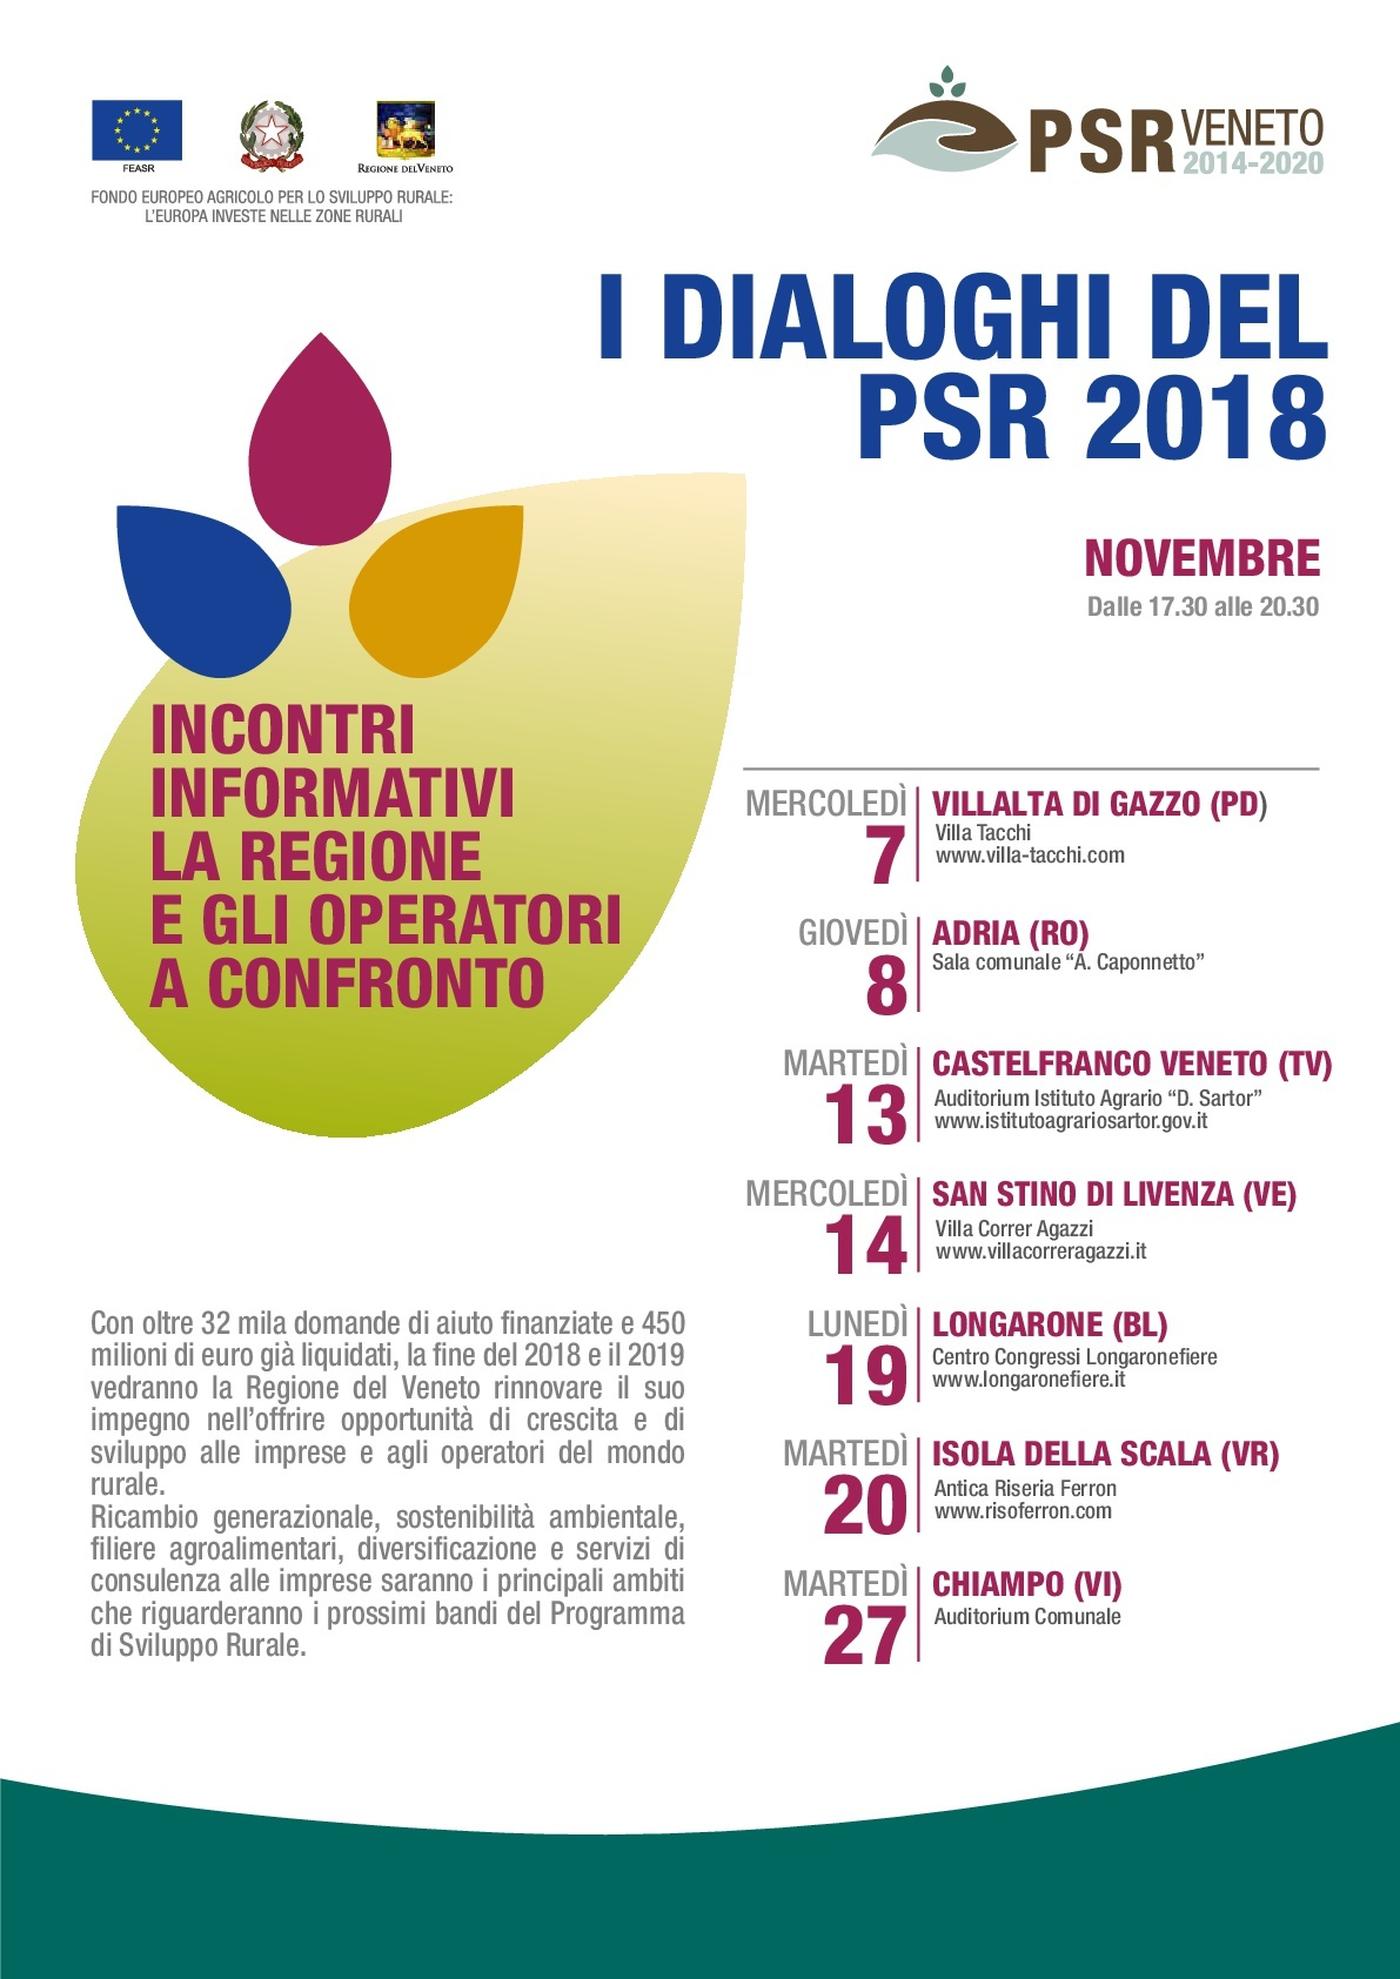 “I dialoghi del PSR 2018”: La Regione e gli operatori a confronto su attuazione, prossimi bandi e prospettive dello sviluppo rurale in Veneto.